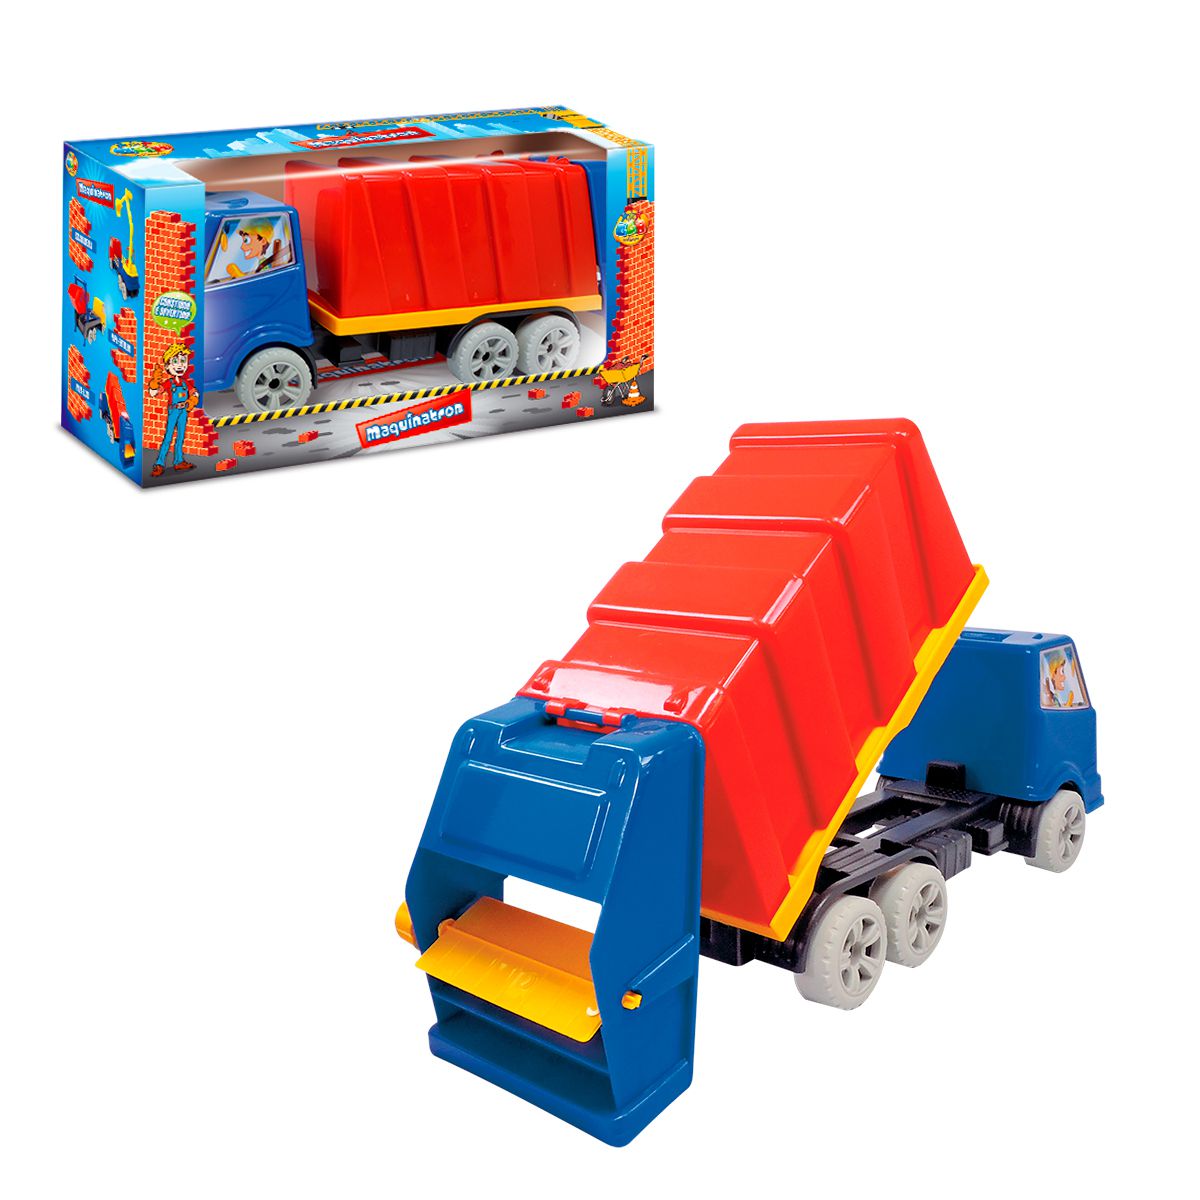 Brinquedo Caminhão de Bombeiro com Controle Remoto 7Fçs - Shop